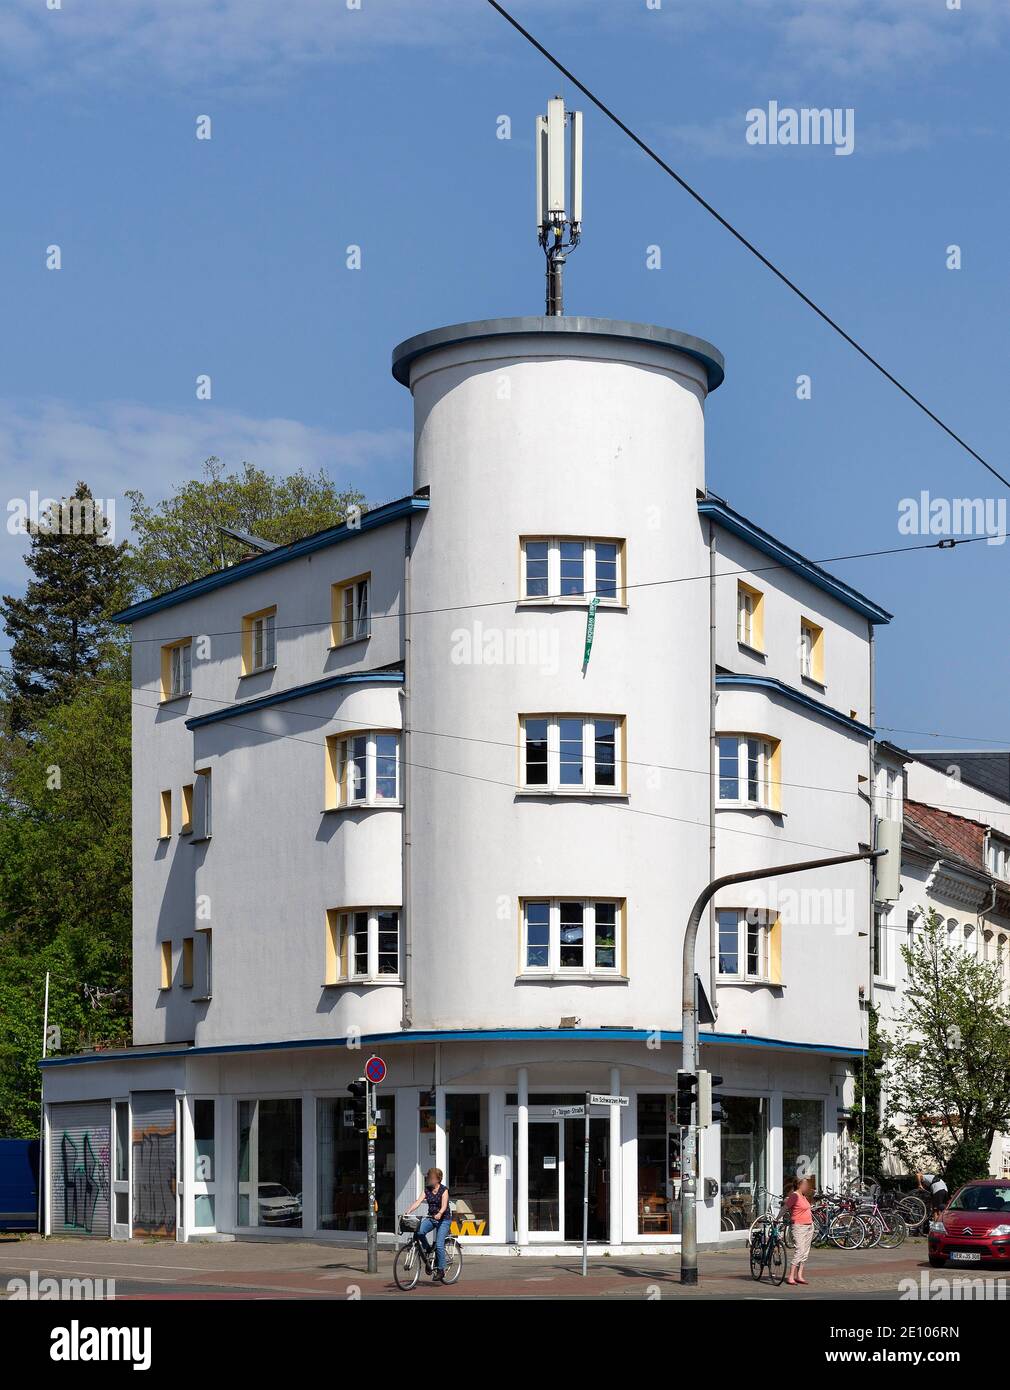 Wohn- und Bürogebäude am Schwarzen Meer, Baustil Neue Sachlichkeit, Ostvorstadt, Bremen, Deutschland, Europa Stockfoto